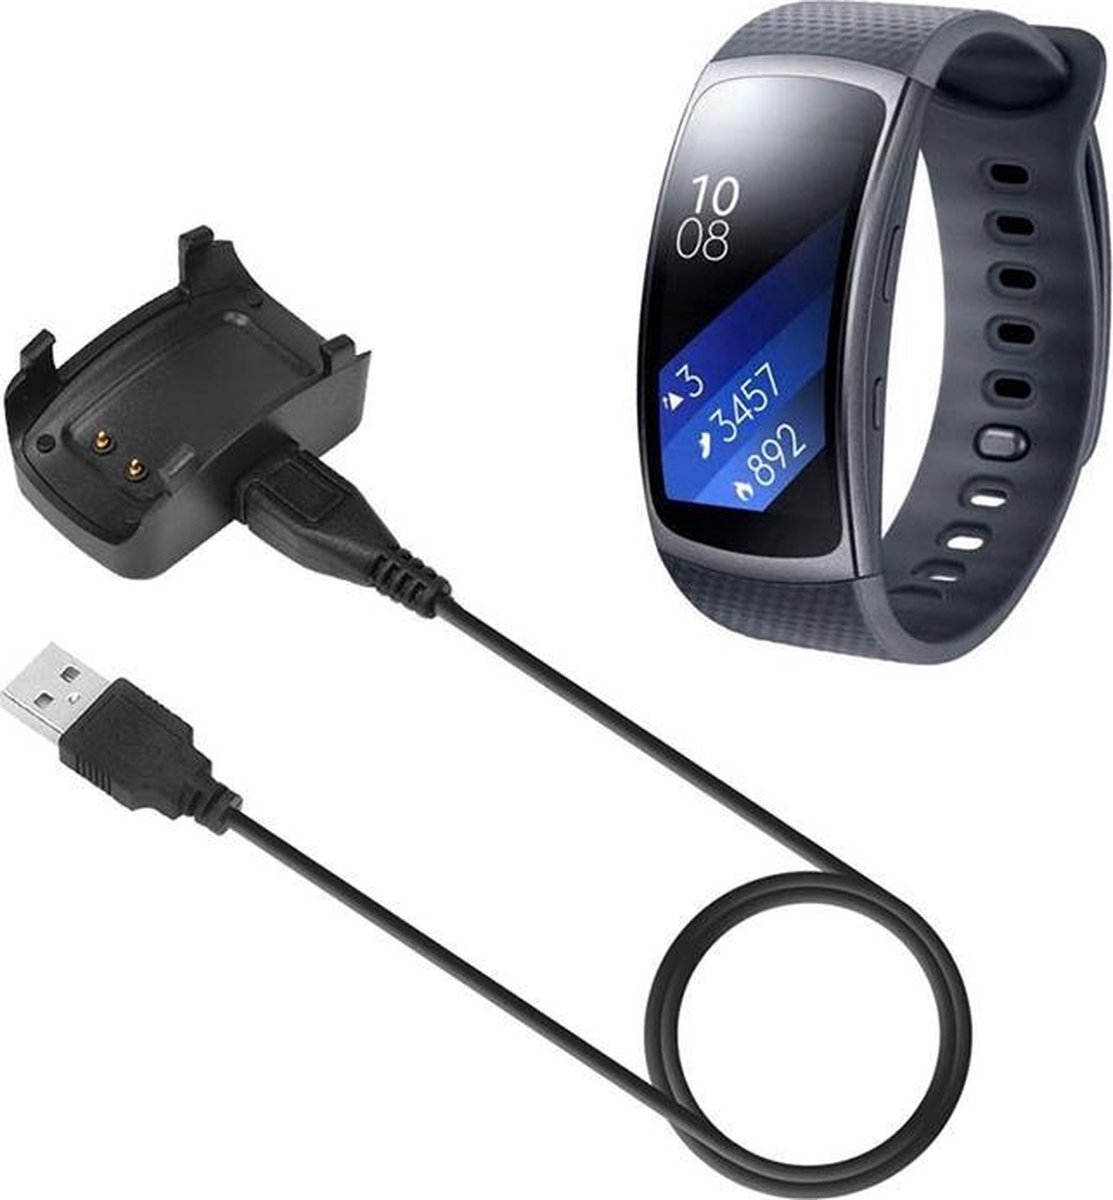 USB Oplader Voor Samsung Gear Fit 2 - Dock Lader Charger Oplaad Kabel /  Laadkabel - Zwart | bol.com